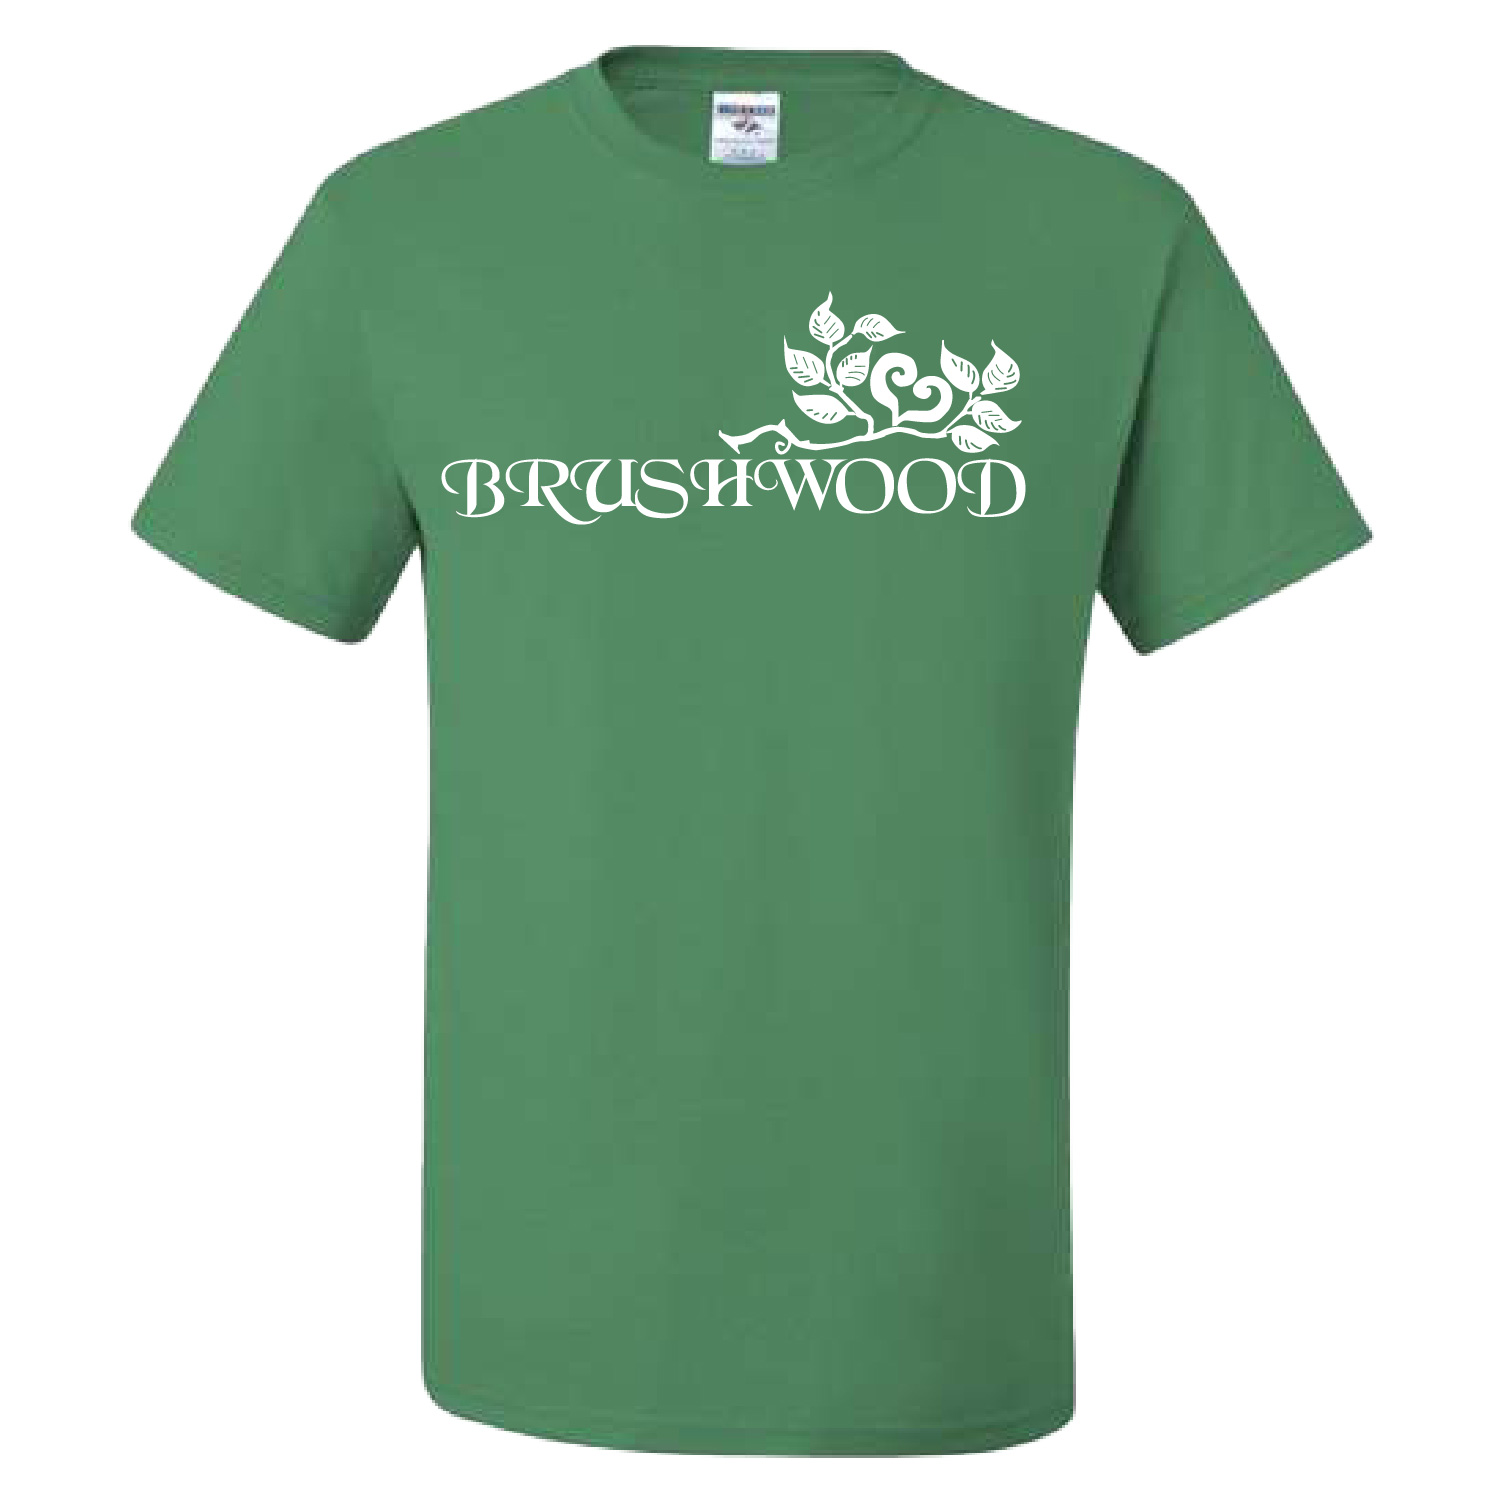 Brushwood – Cotton Short Sleeve Shirt – Kelly product image